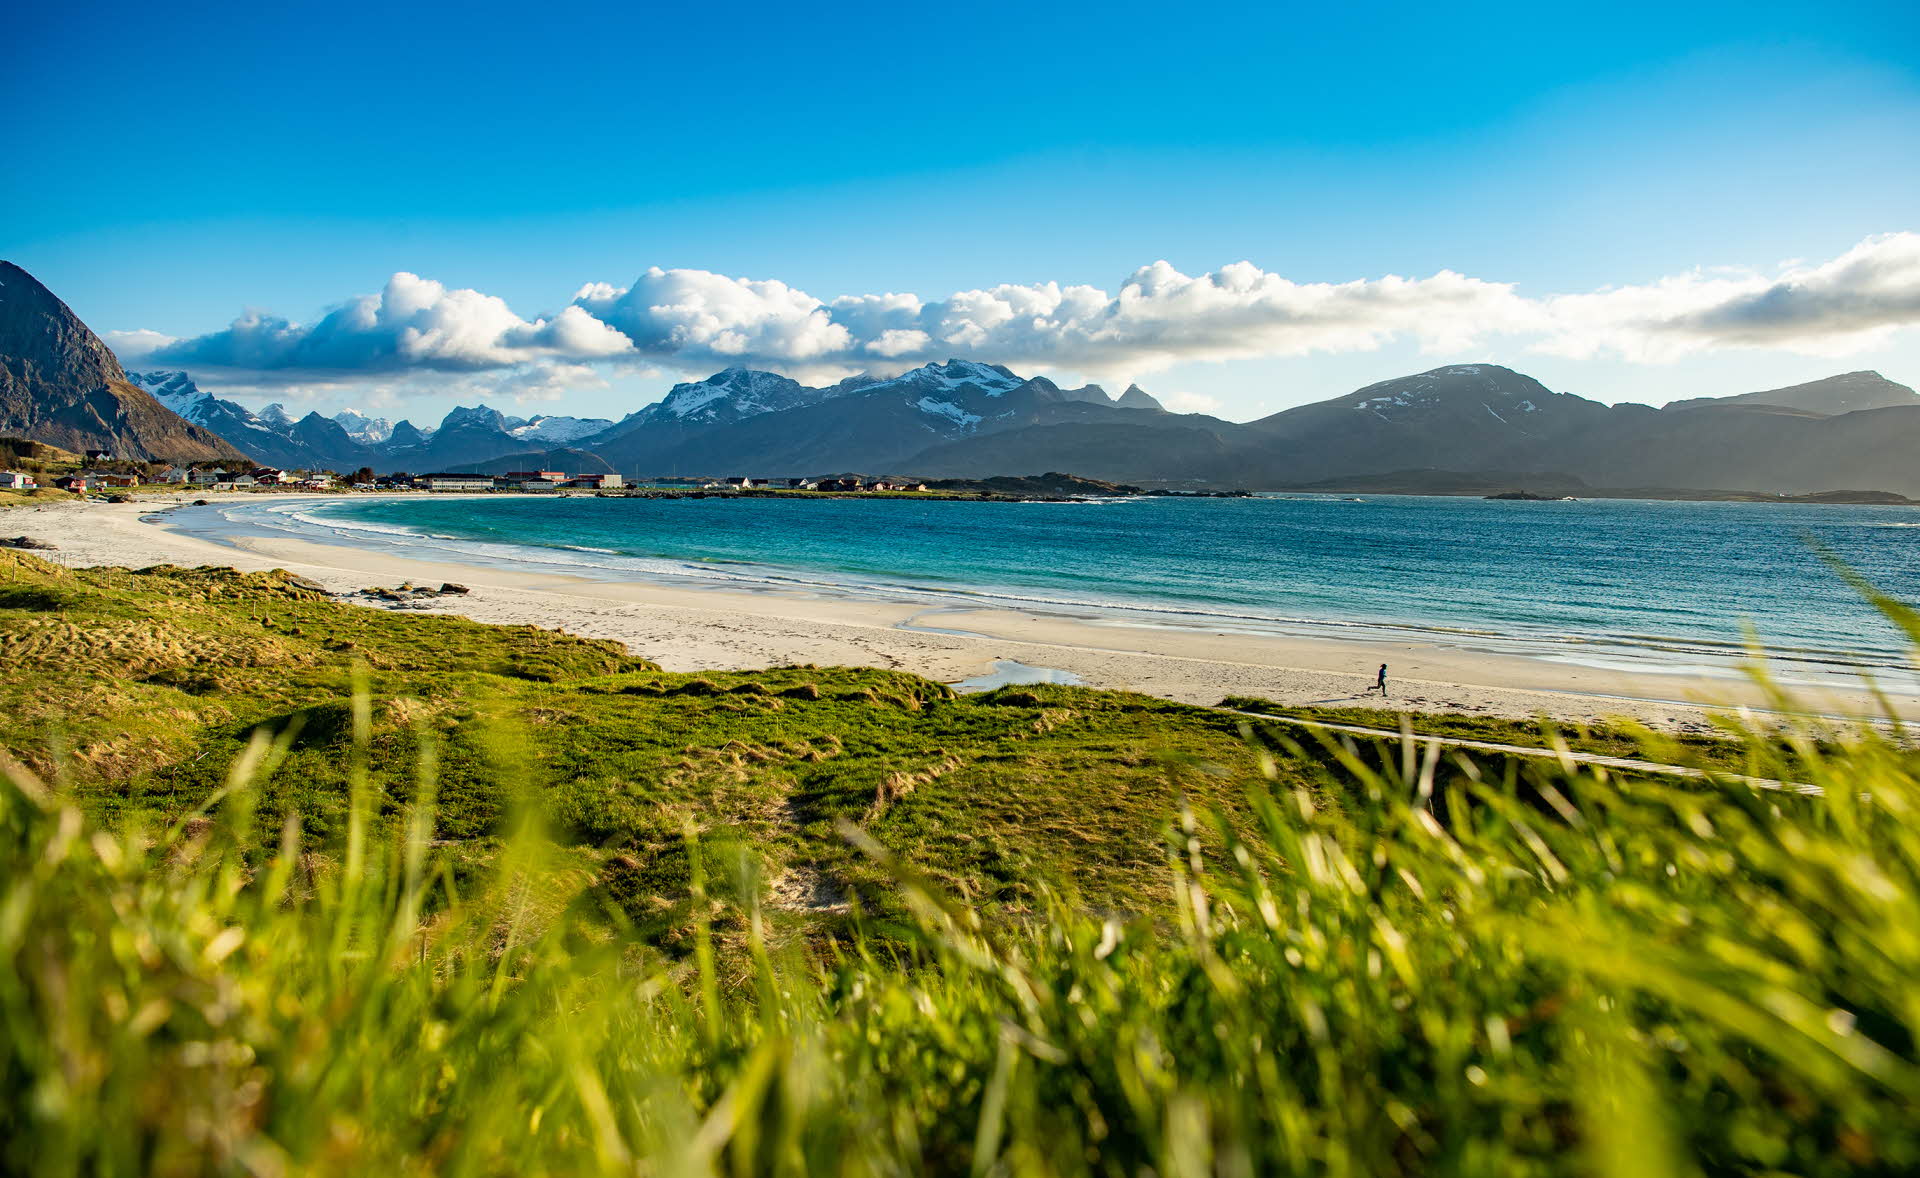 Hierba verde frente a una playa de arena blanca, mar azul y montañas oscuras al fondo.